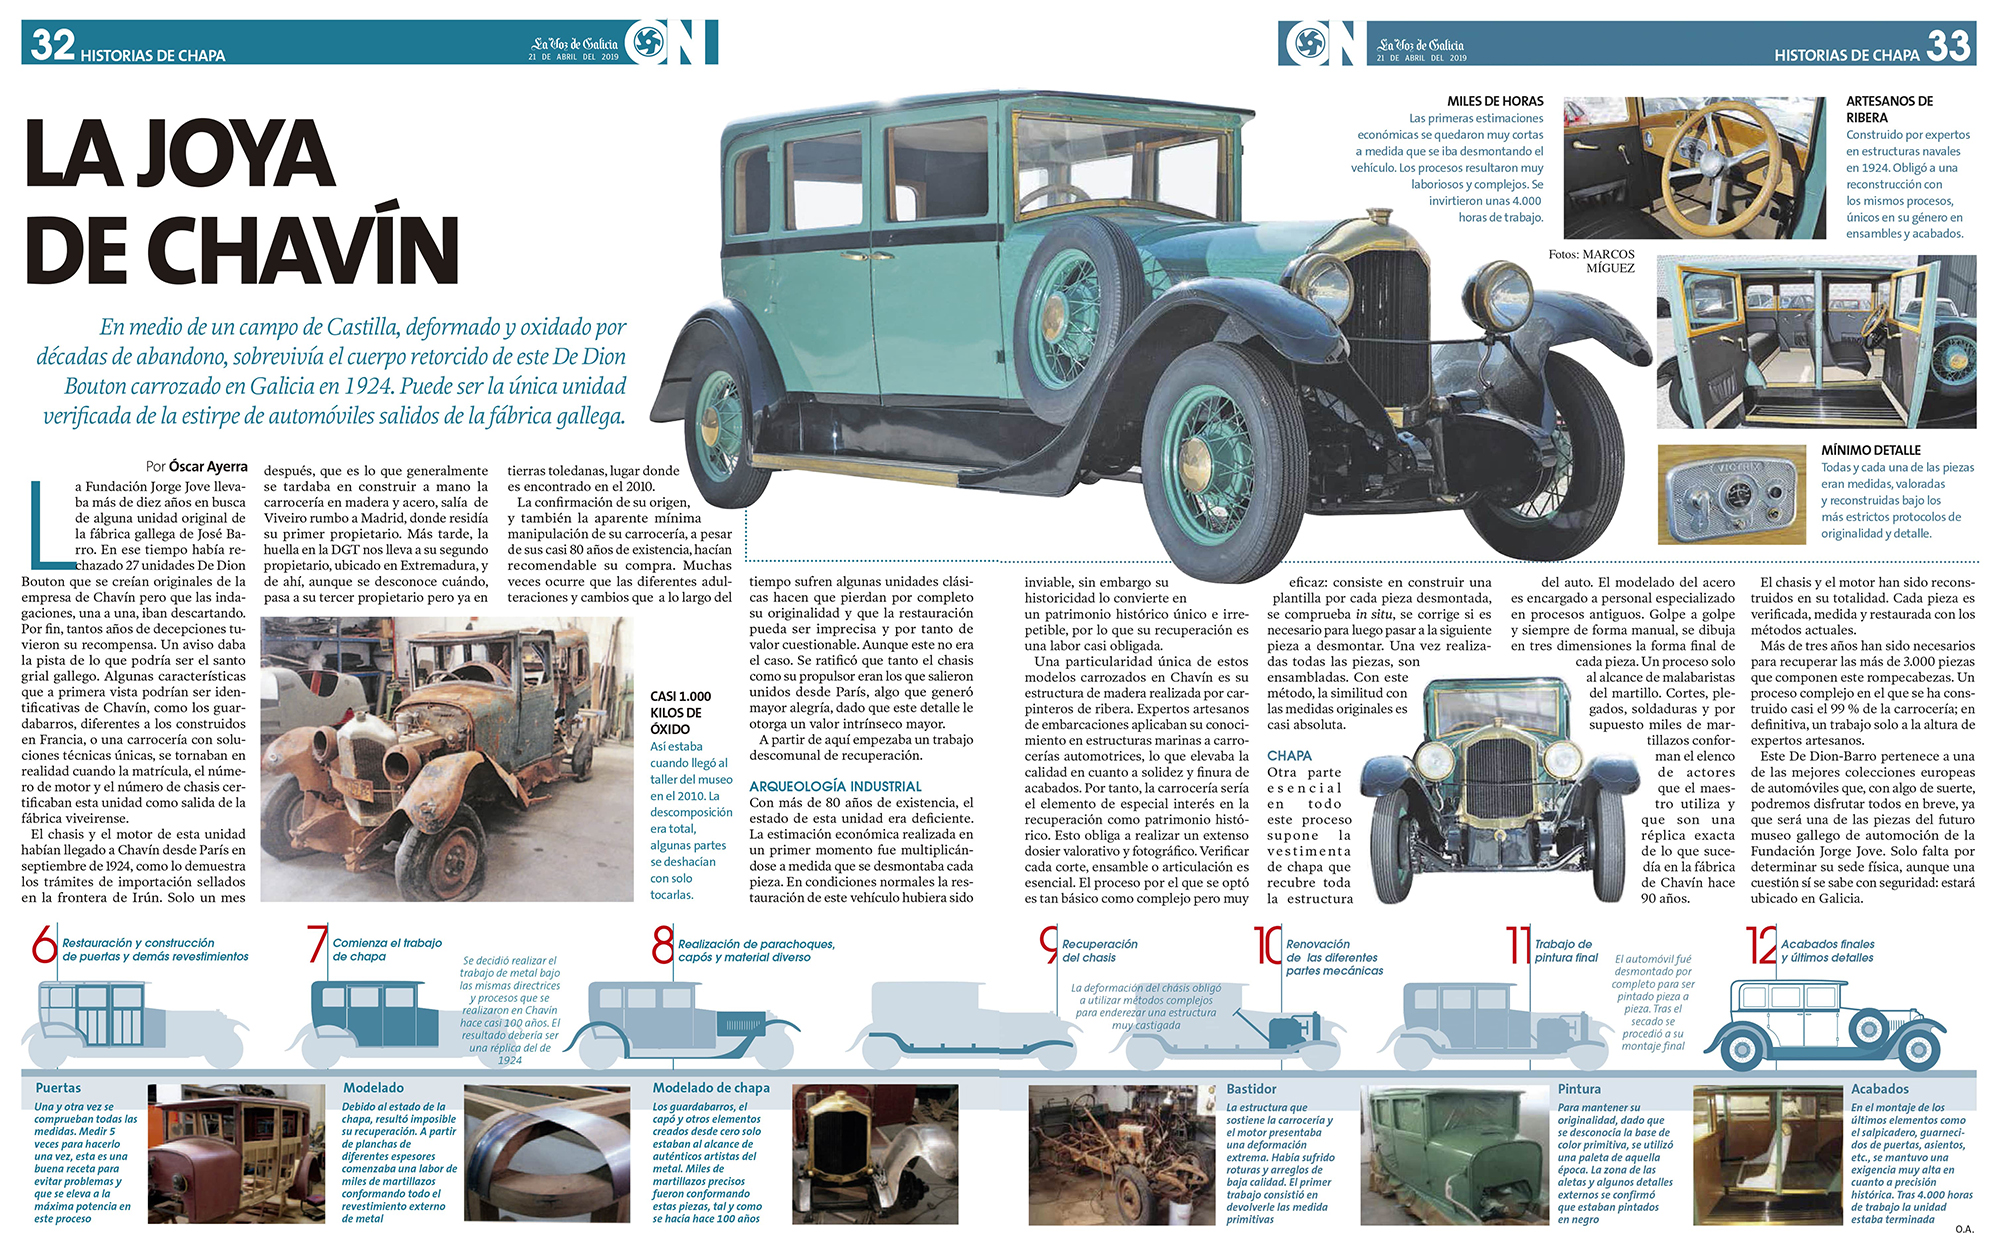 Artículo de La Voz de Galicia en colaboración con la Fundación Jorge Jove sobre el automóvil clásico De Dion Bouton fabricado en Chavín